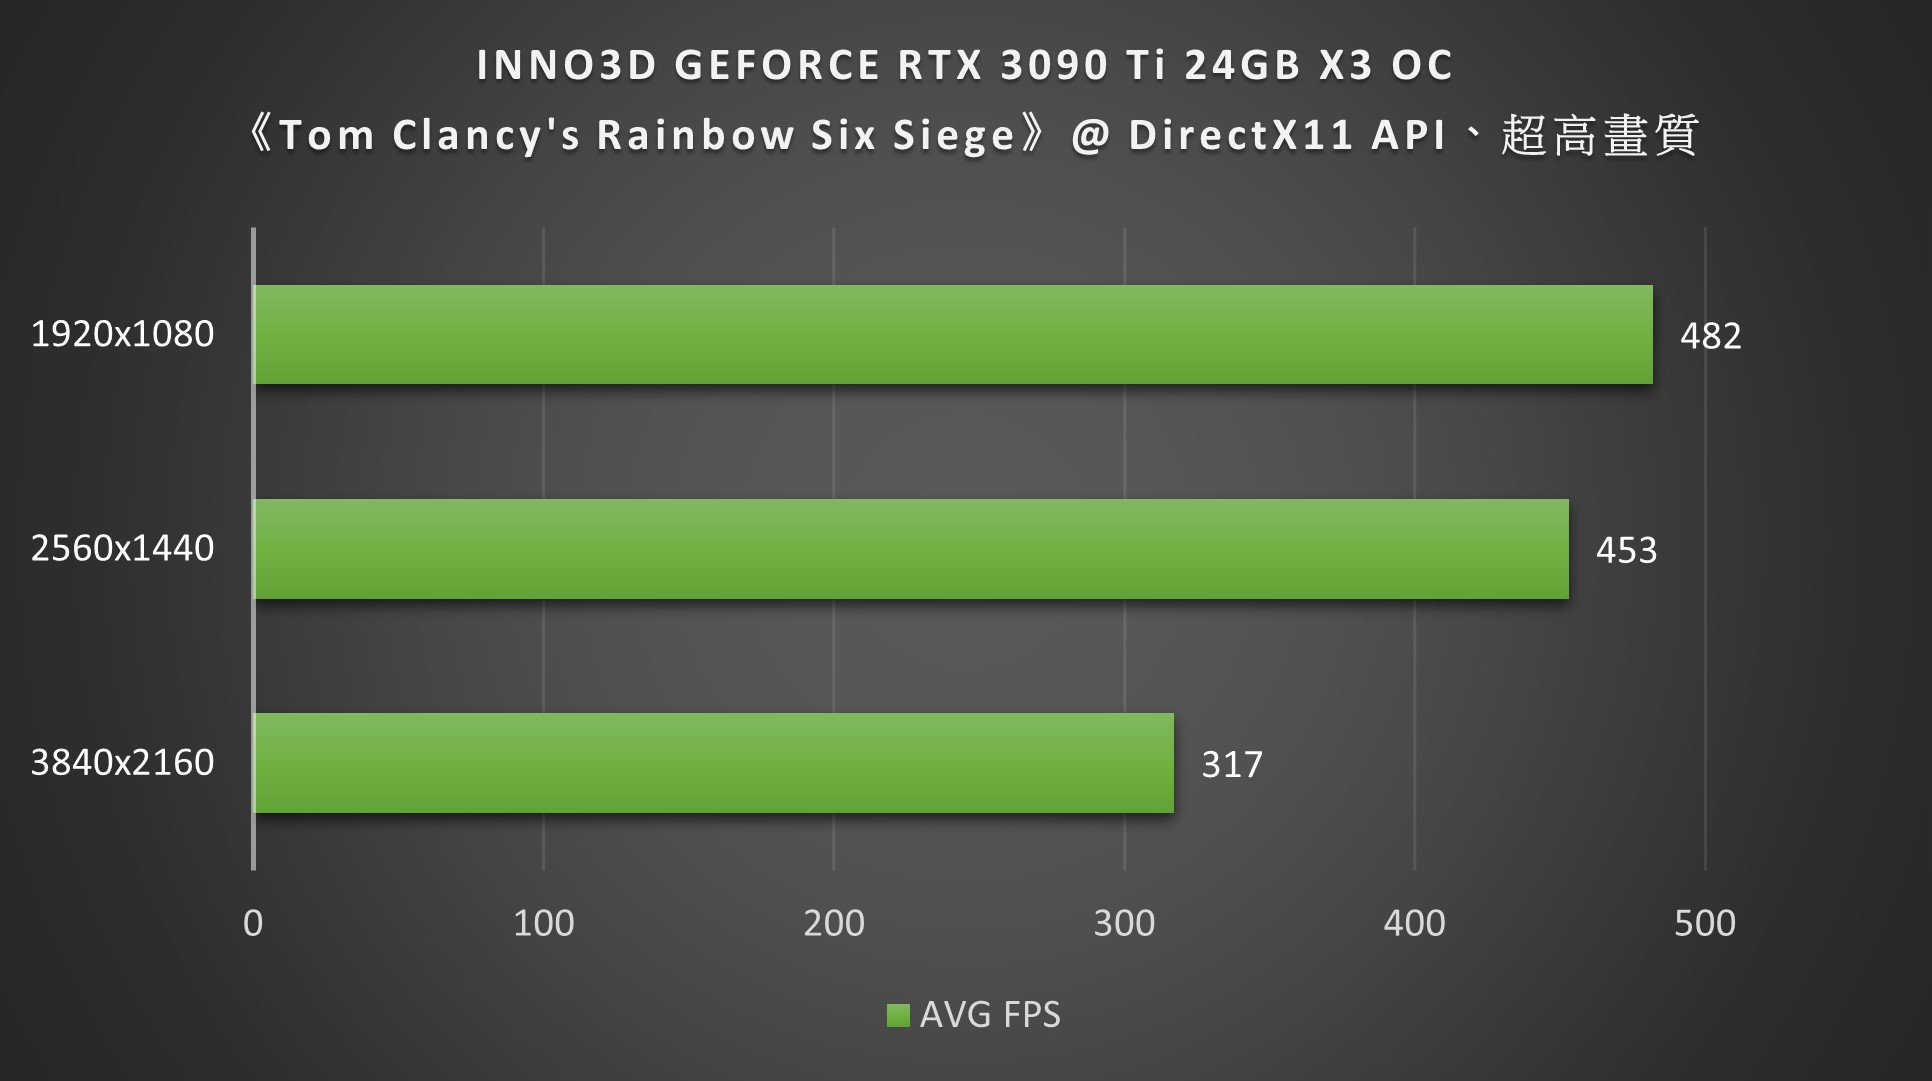 INNO3D GEFORCE RTX 3090 Ti 24GB